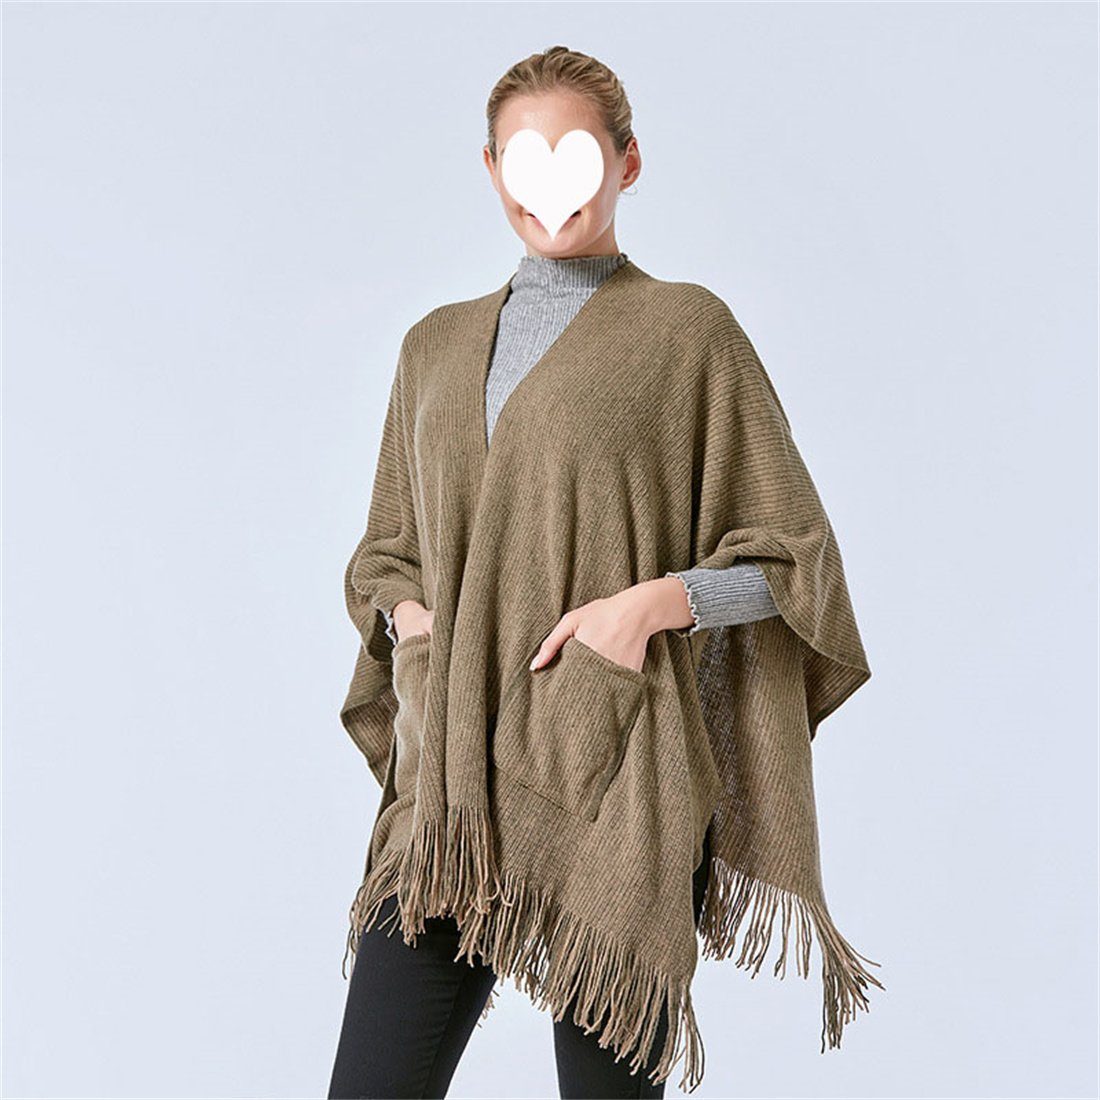 DÖRÖY Modeschal Damen Winter Retro Schal, Tasche Umhang Schal warme Mode einfarbig khaki